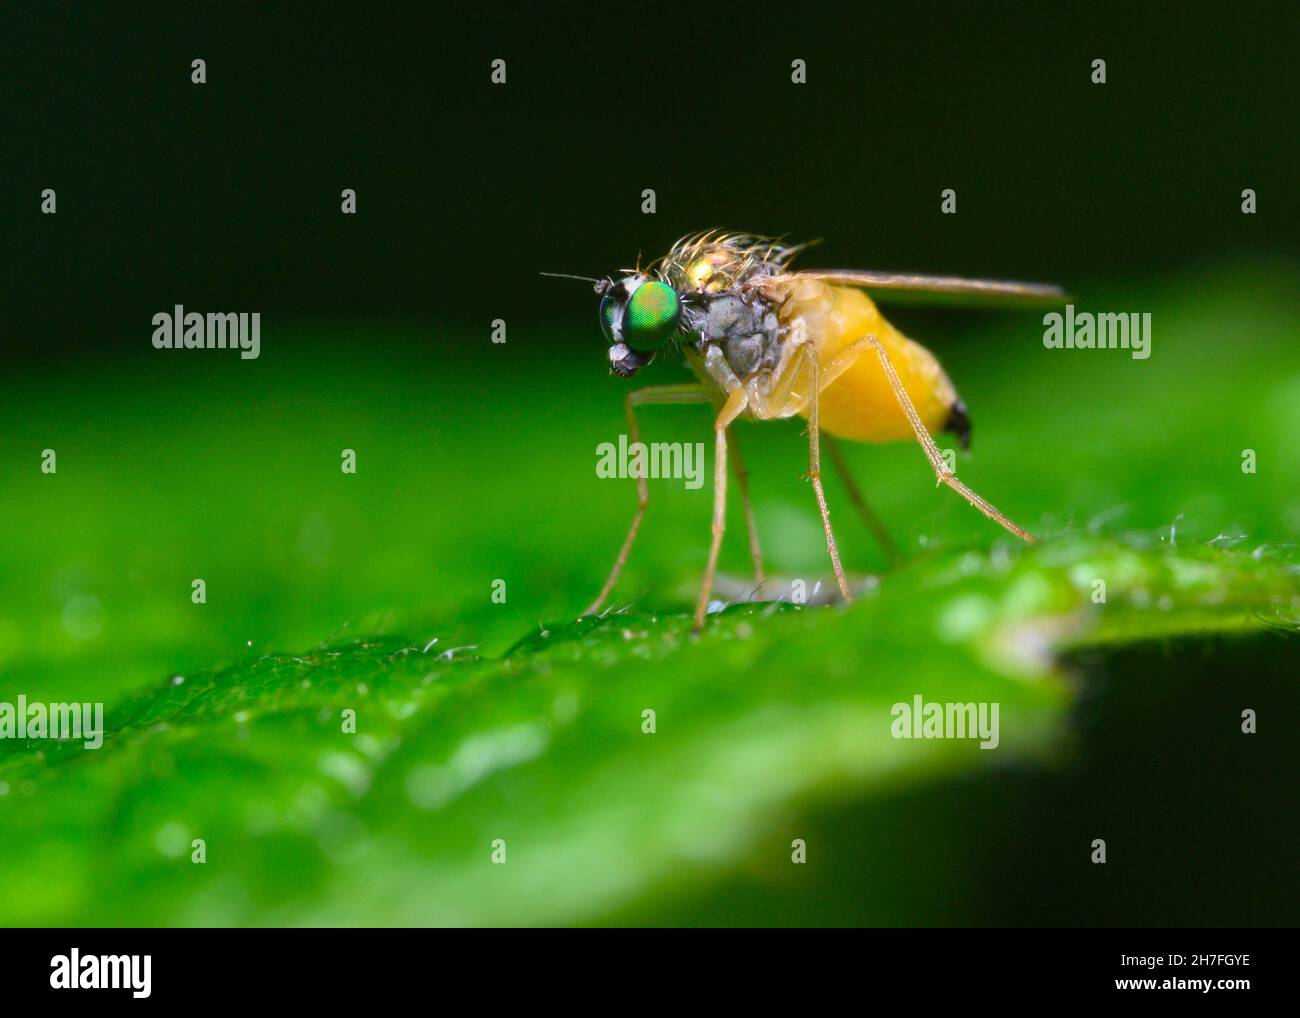 Una mosca con un vientre amarillo y ojos verdes brillantes se sienta en una hoja de árbol Foto de stock